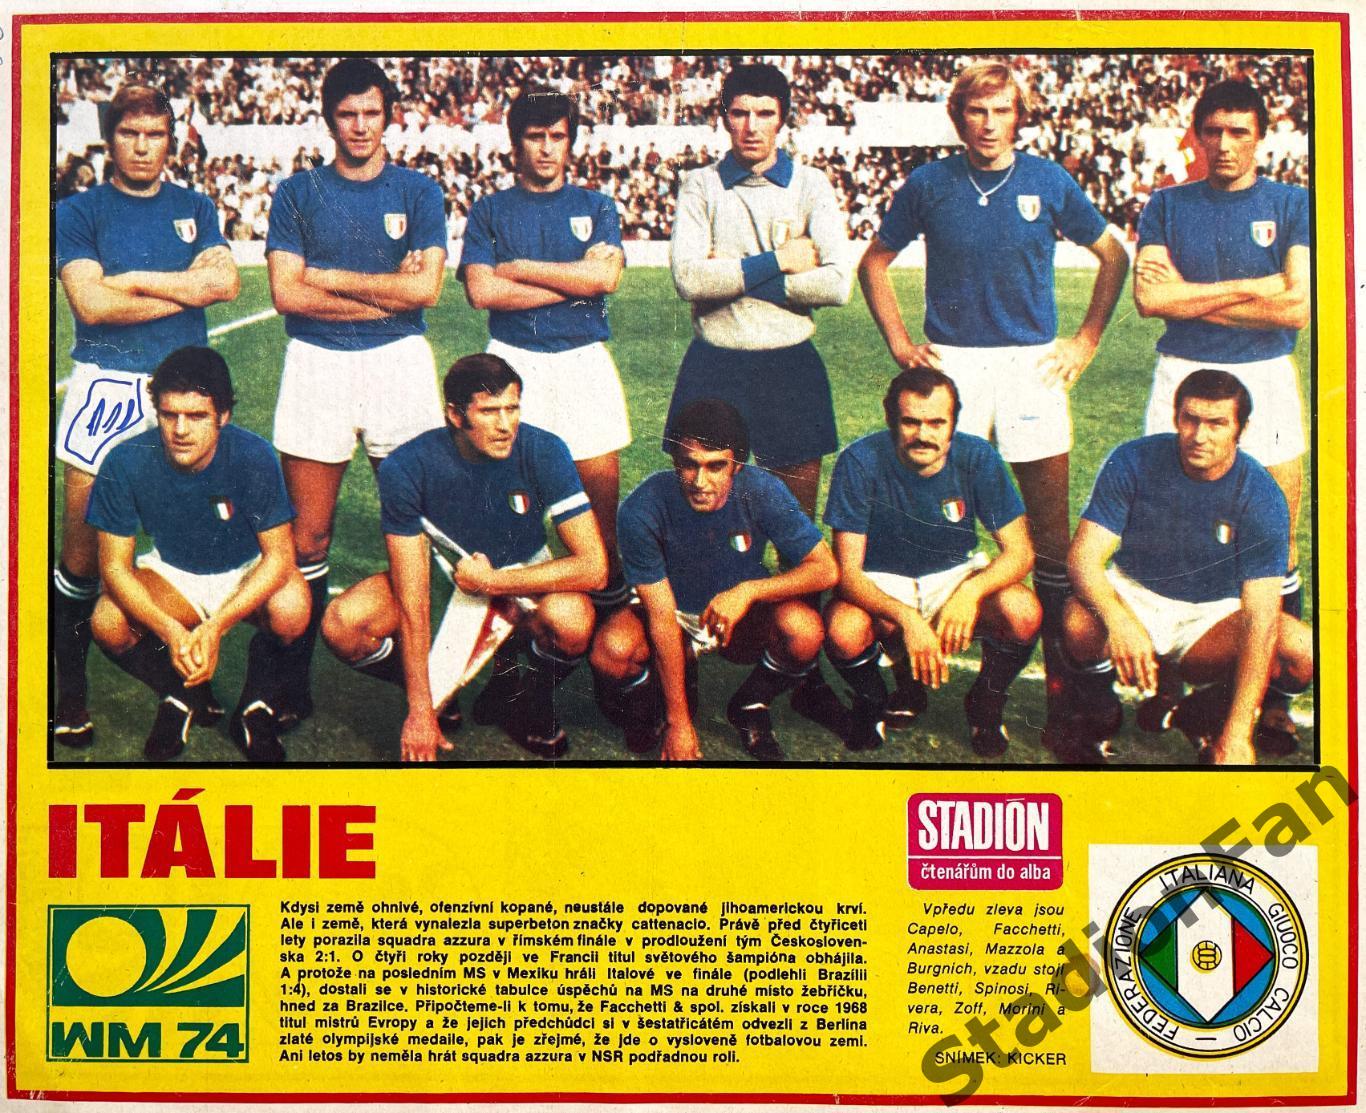 Постер из журнала Стадион (Stadion) - Italie, 1974